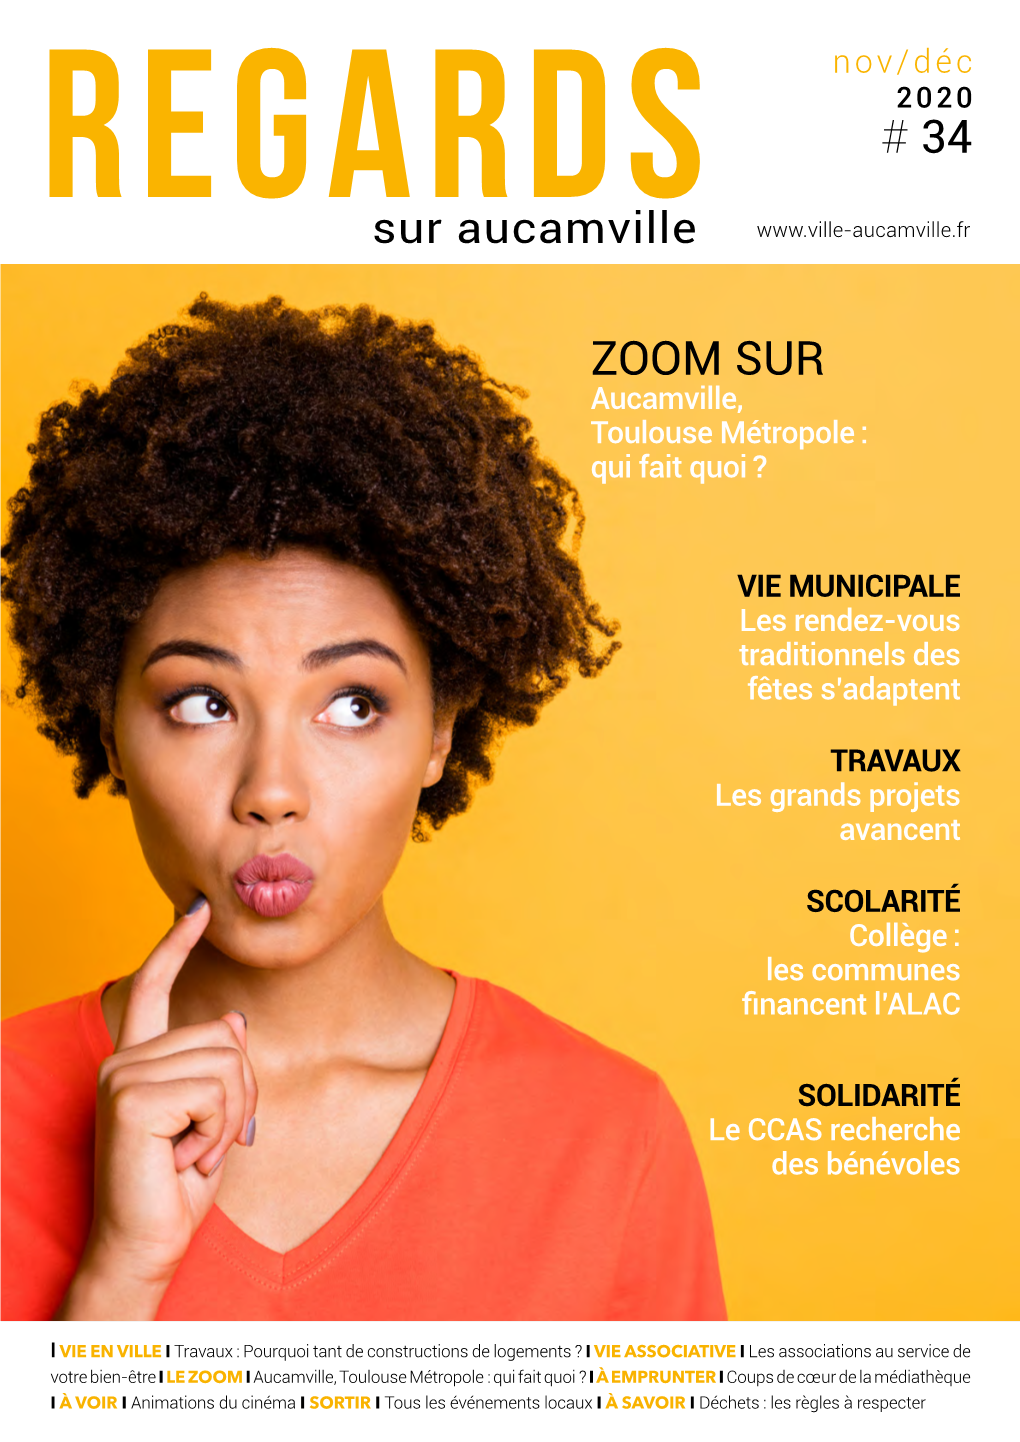 ZOOM SUR Aucamville, Toulouse Métropole : Qui Fait Quoi ?